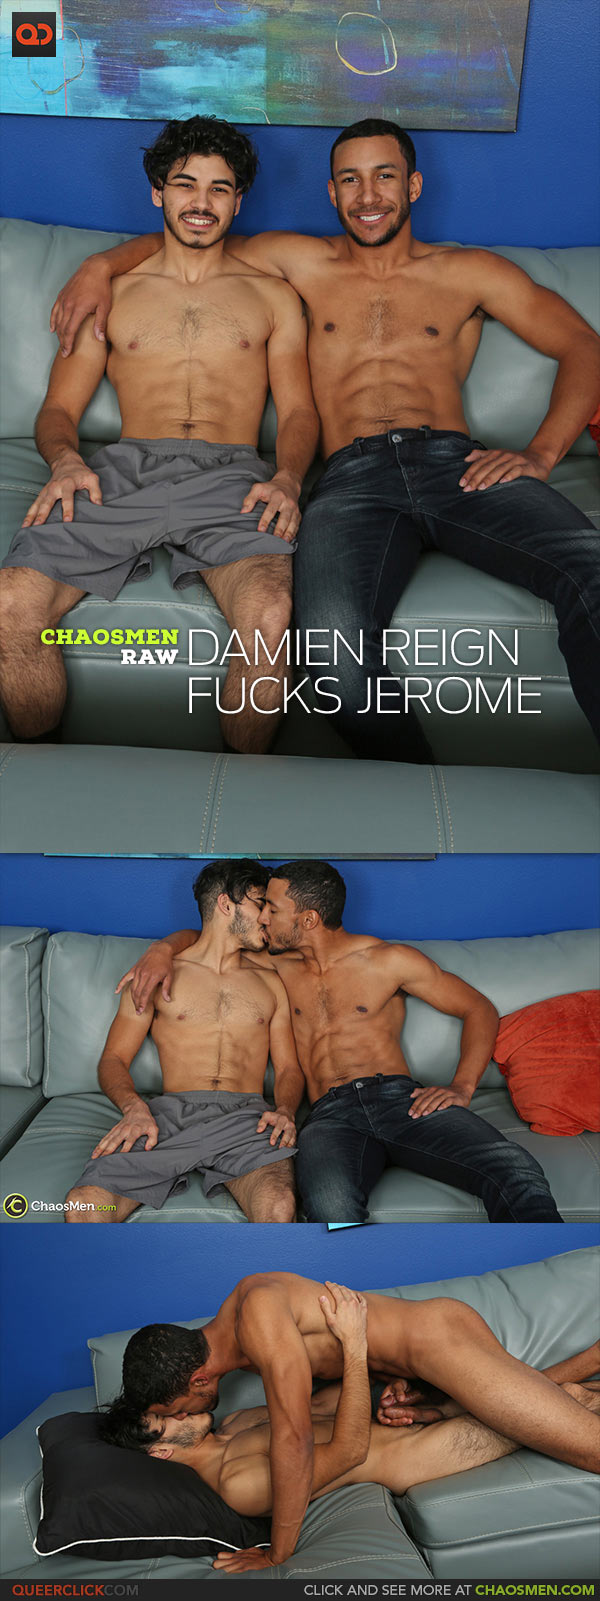 ChaosMen: Damien Reign Fucks Jerome - Bareback